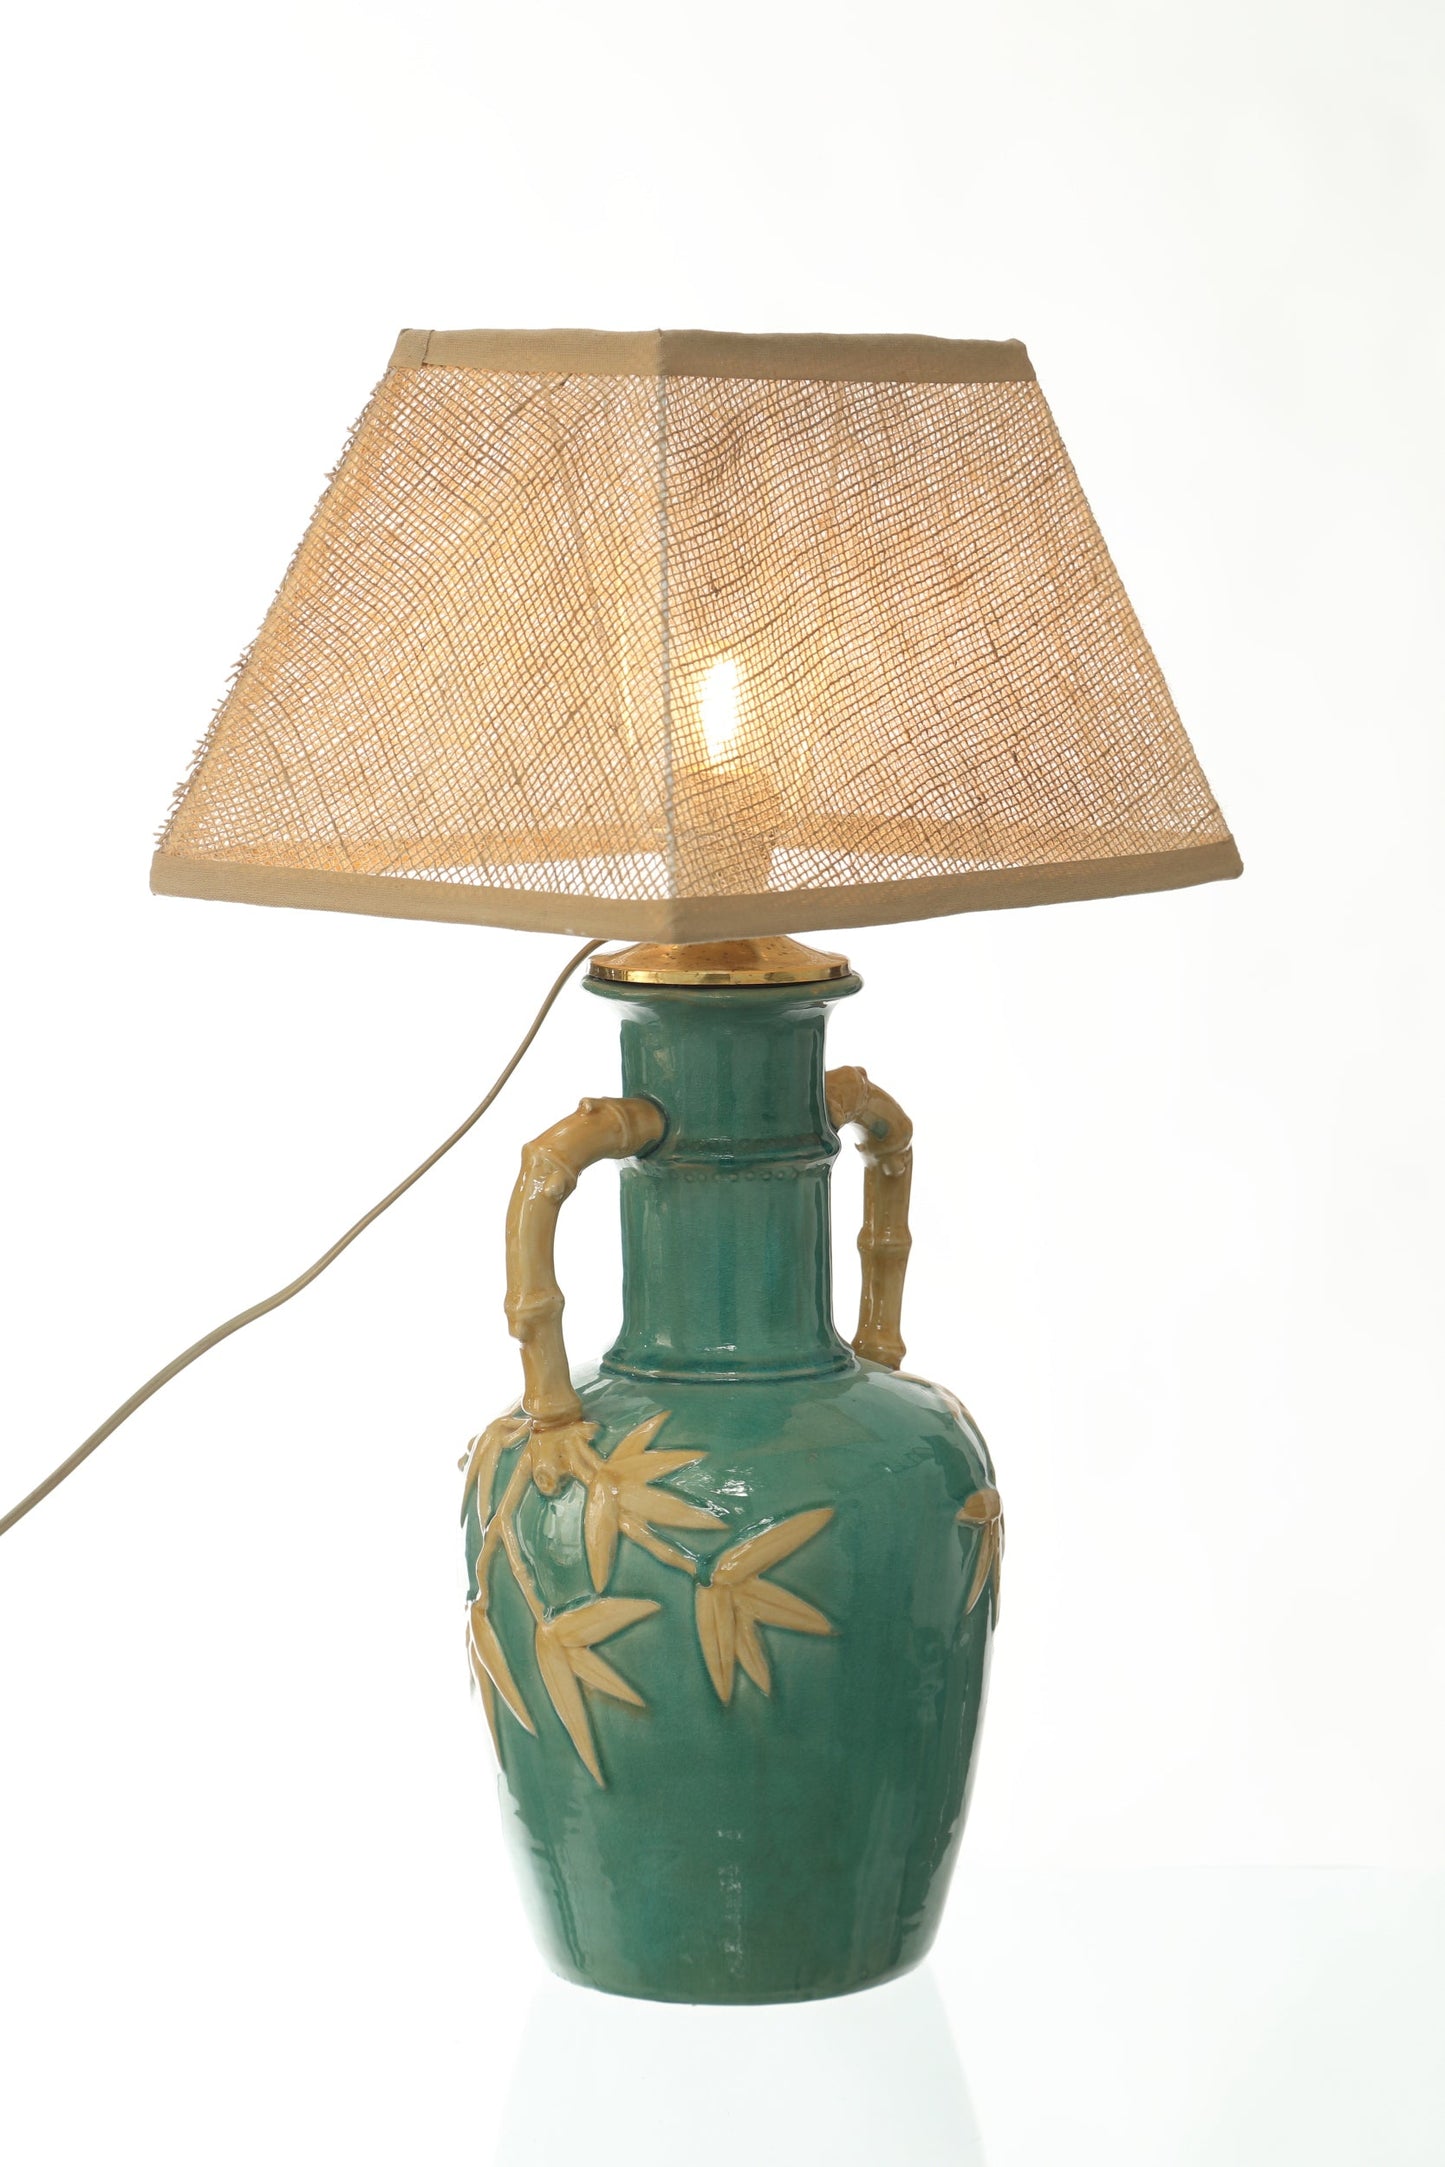 Bamboo effect ceramic lamp